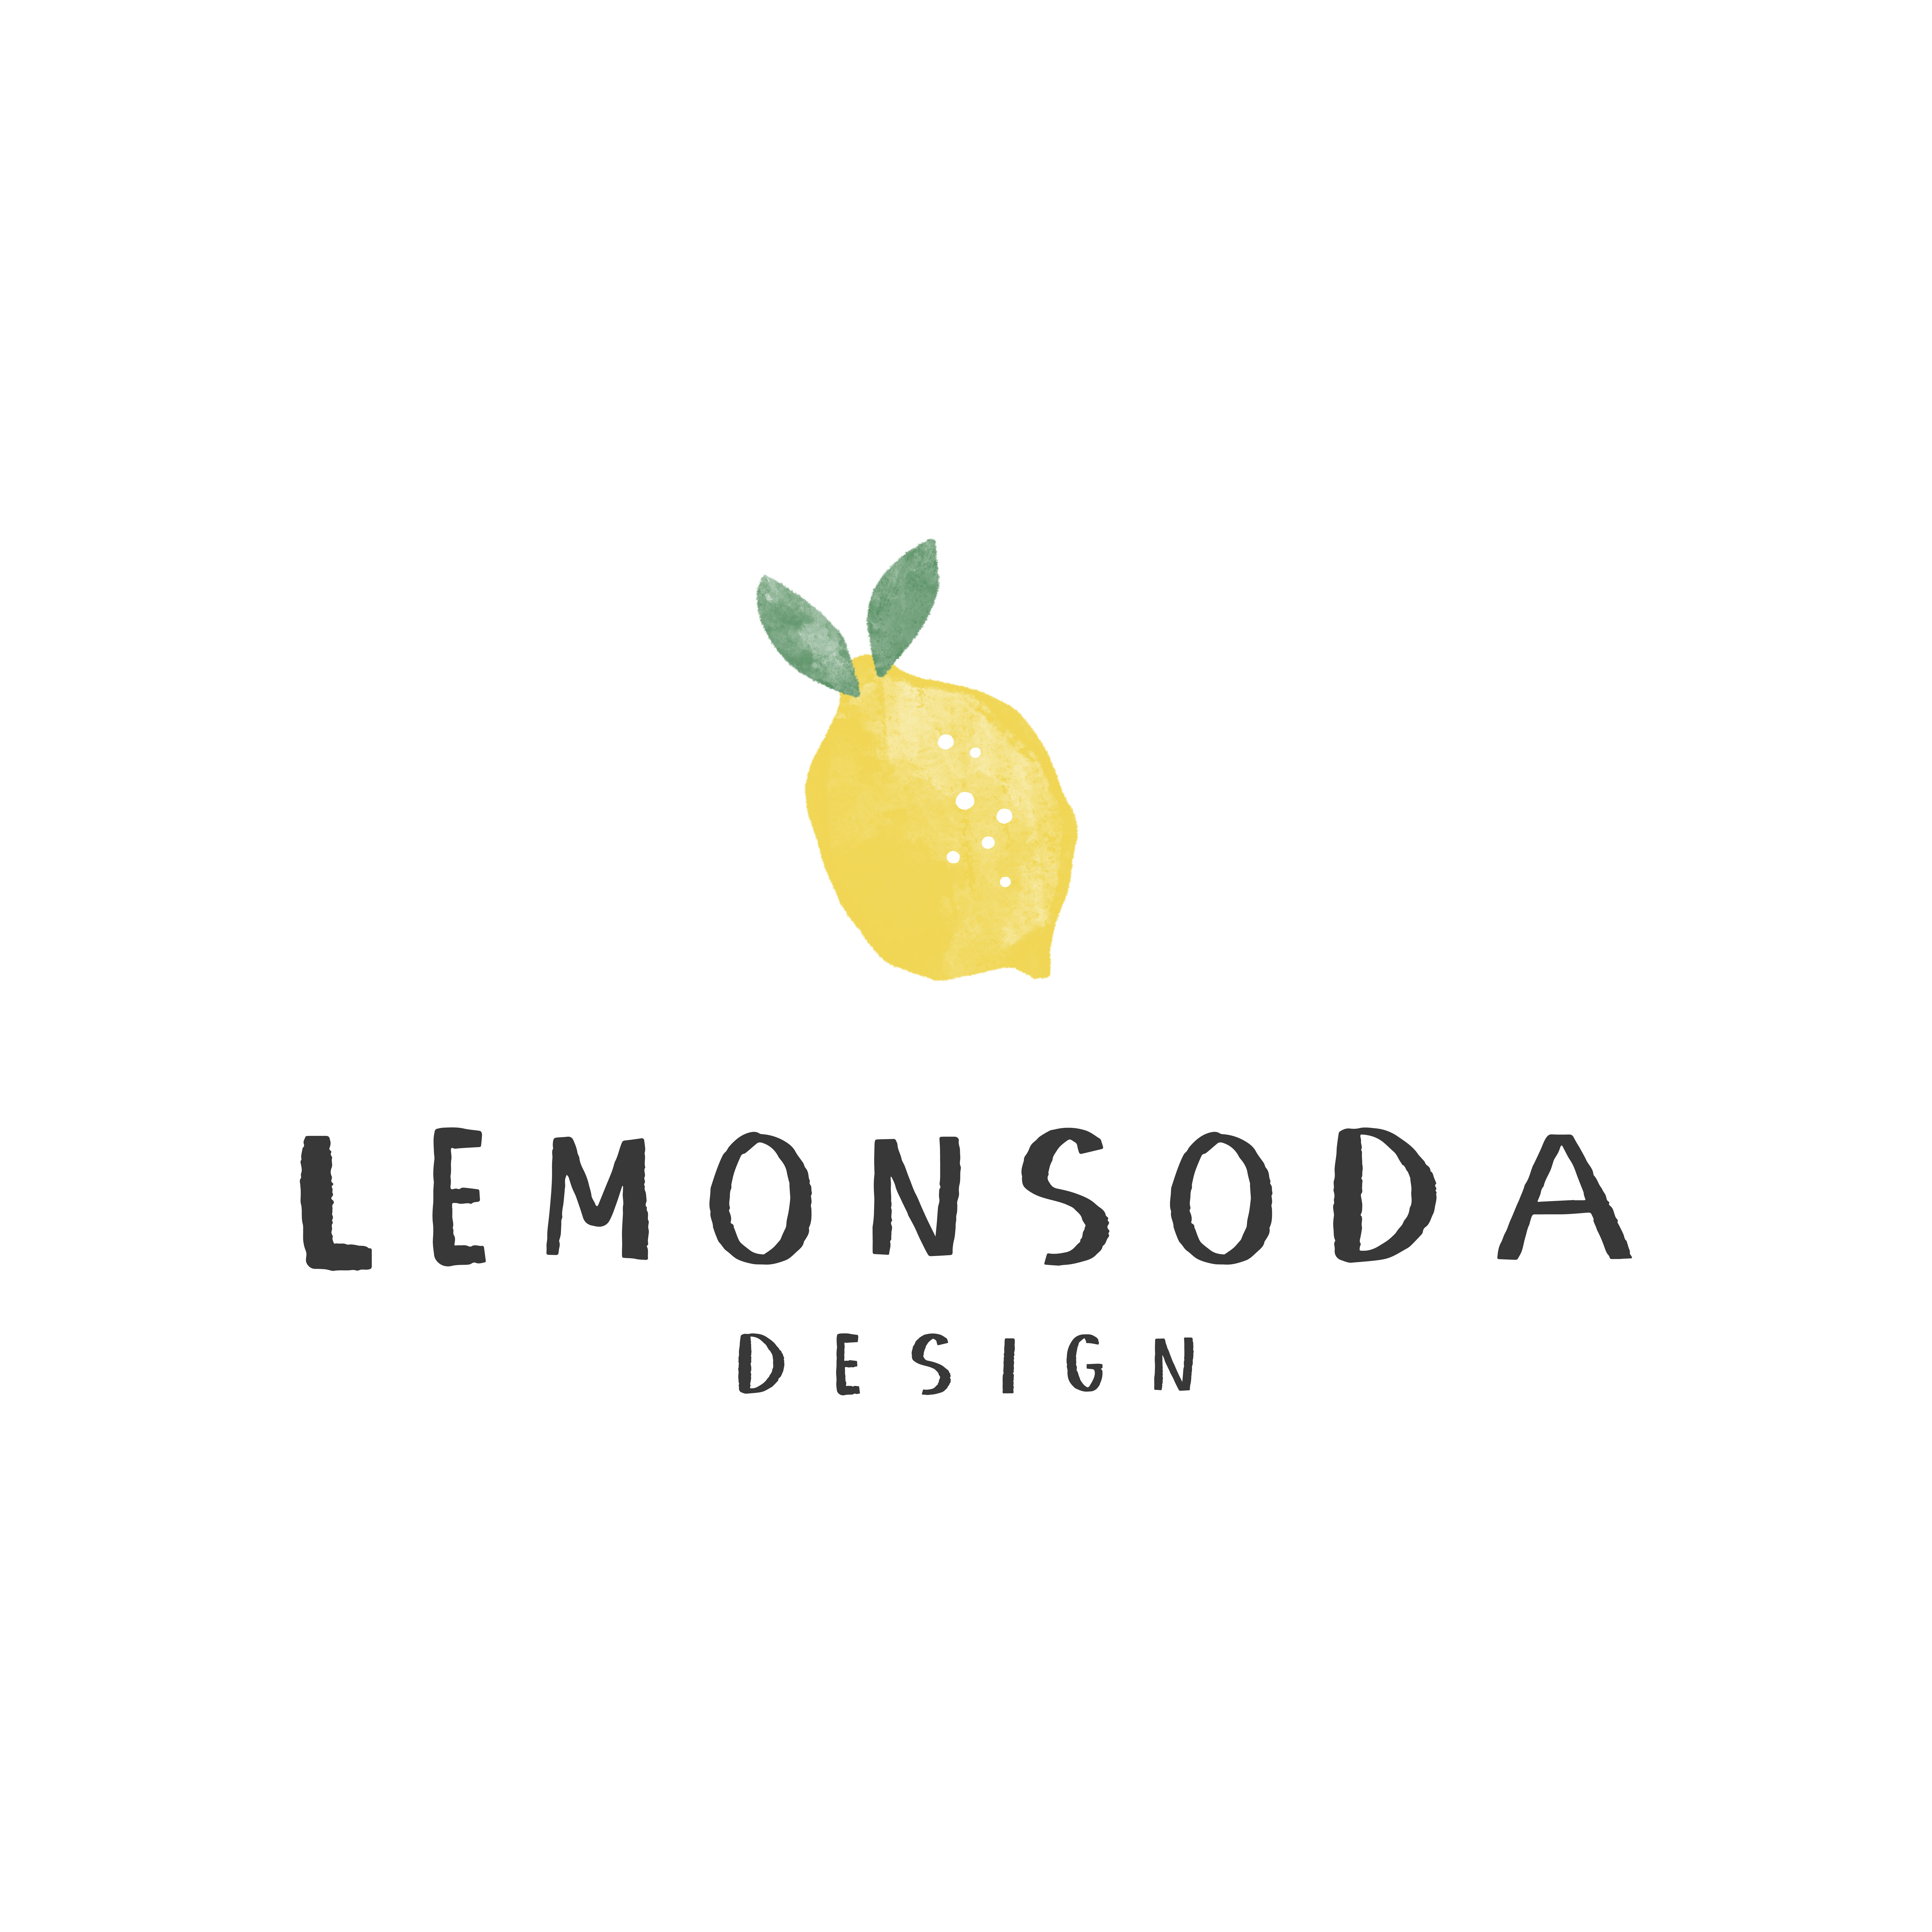 LemonSodaDesign